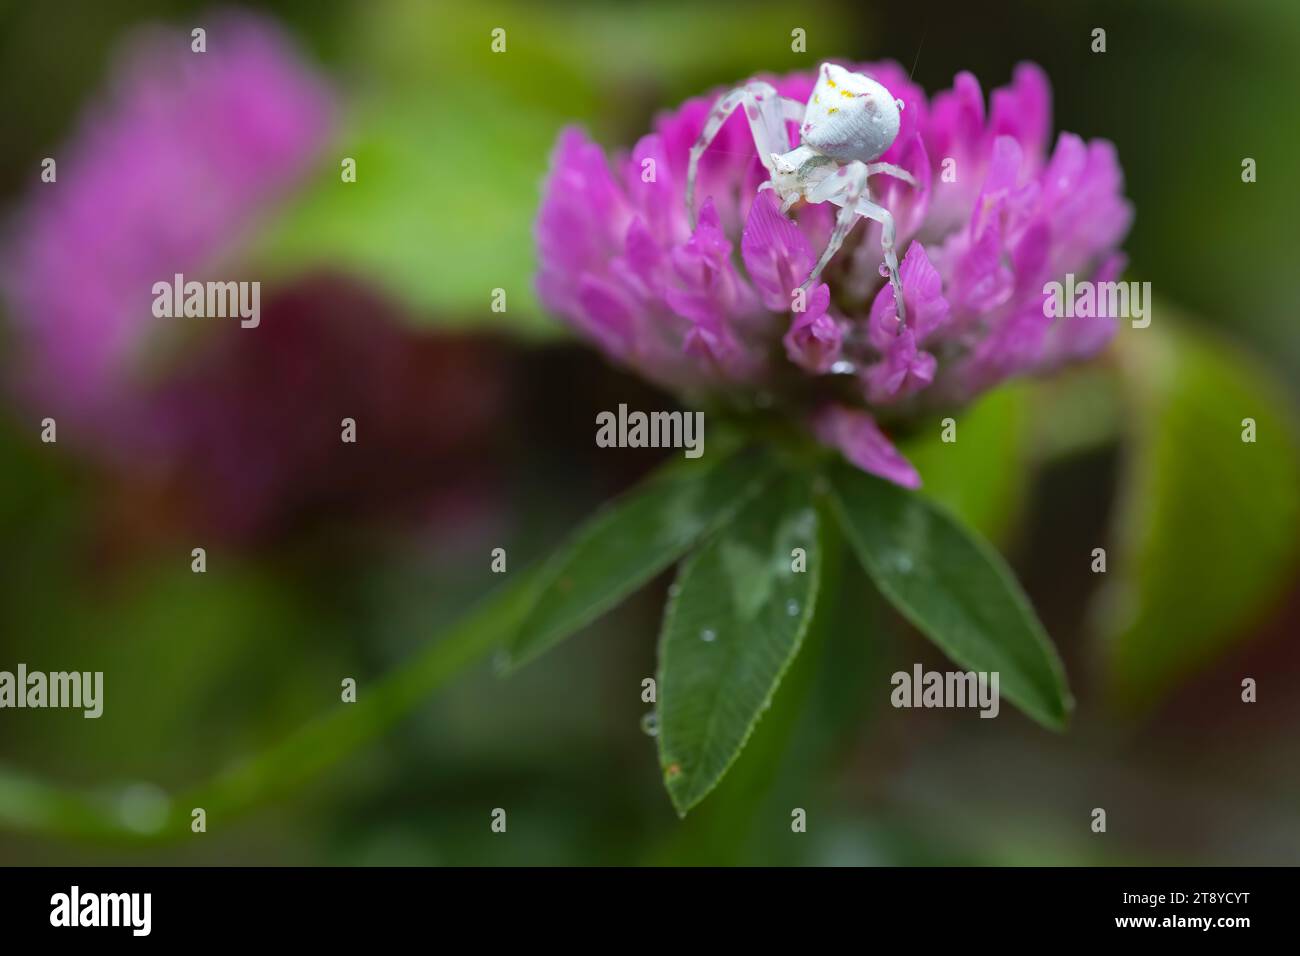 Die Krabbenspinne sitzt auf einer rosa Blume im Wald. Horizontales Naturfoto. Ich warte darauf, seine Beute zu jagen. Kopierbereich. Stockfoto